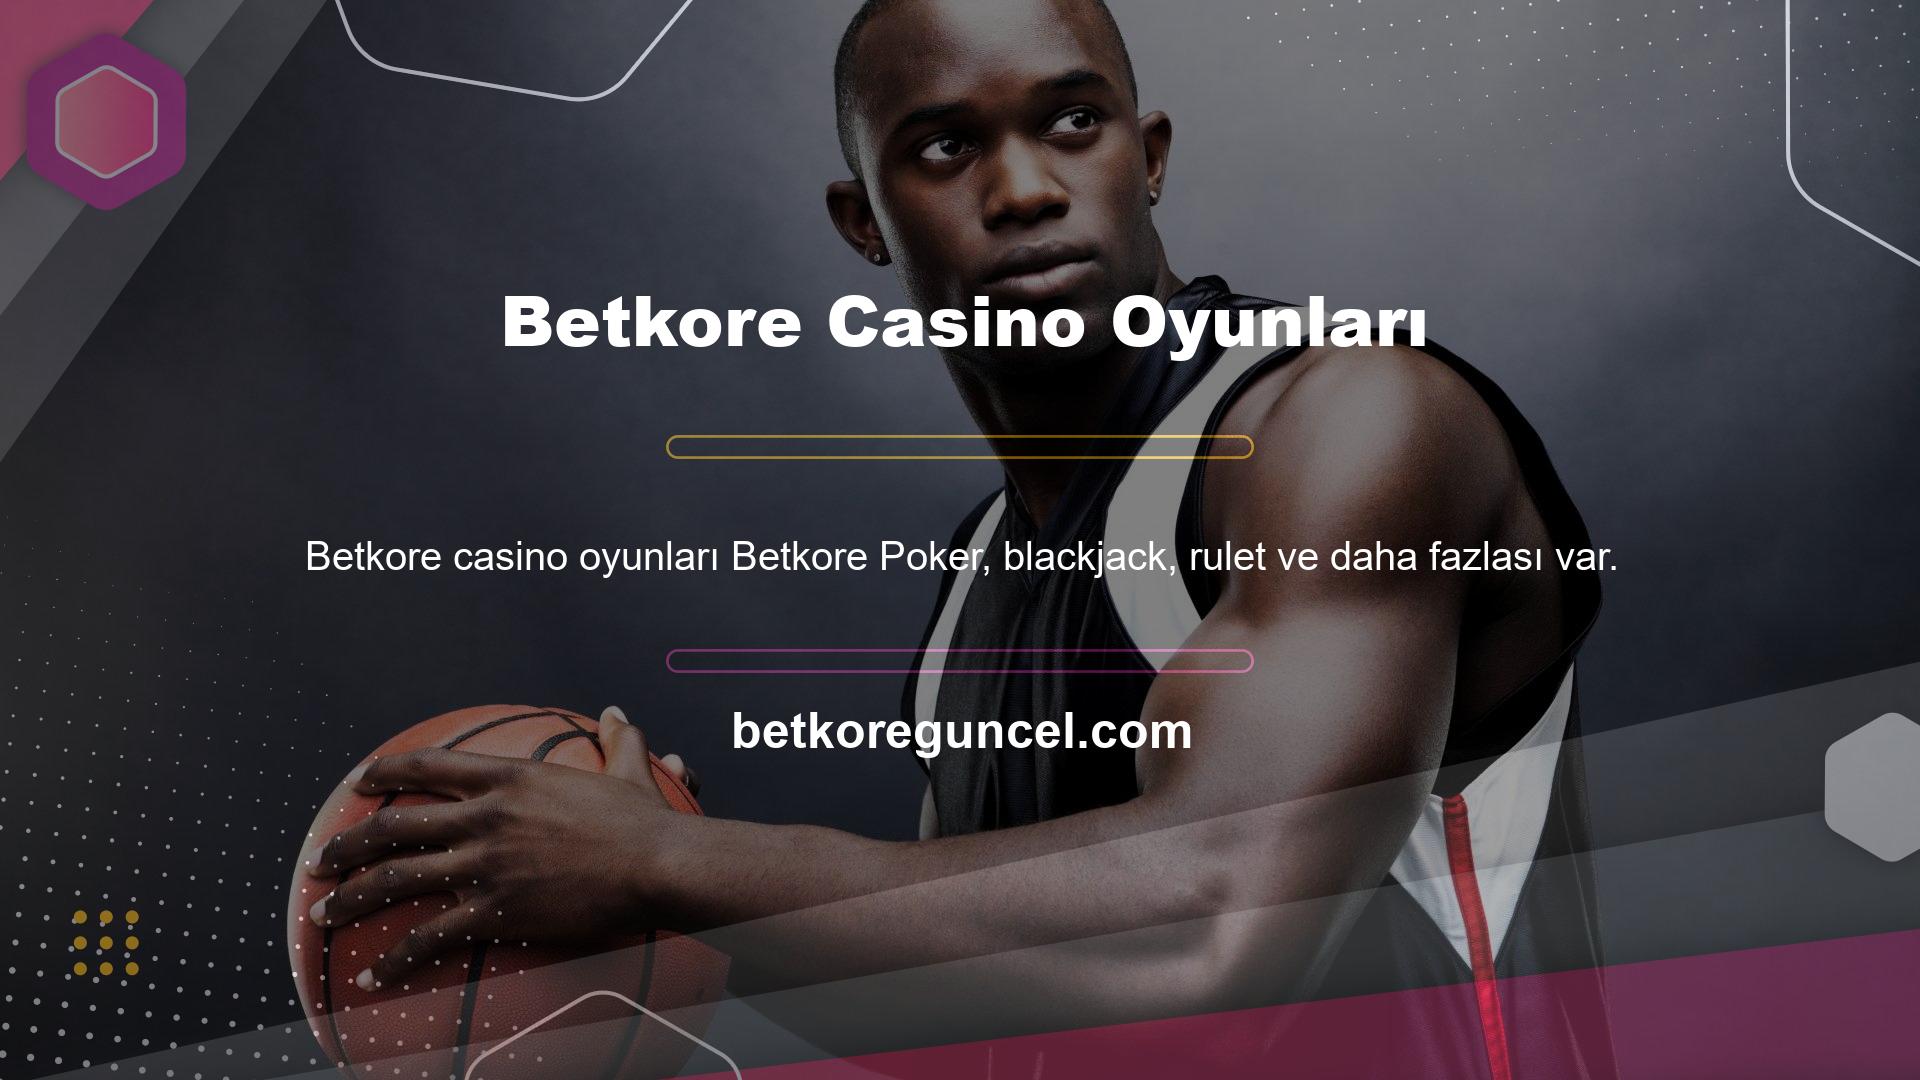 Betkore Türkiye'nin en köklü online casinosu olarak kullanıcıları anında memnun edebilir